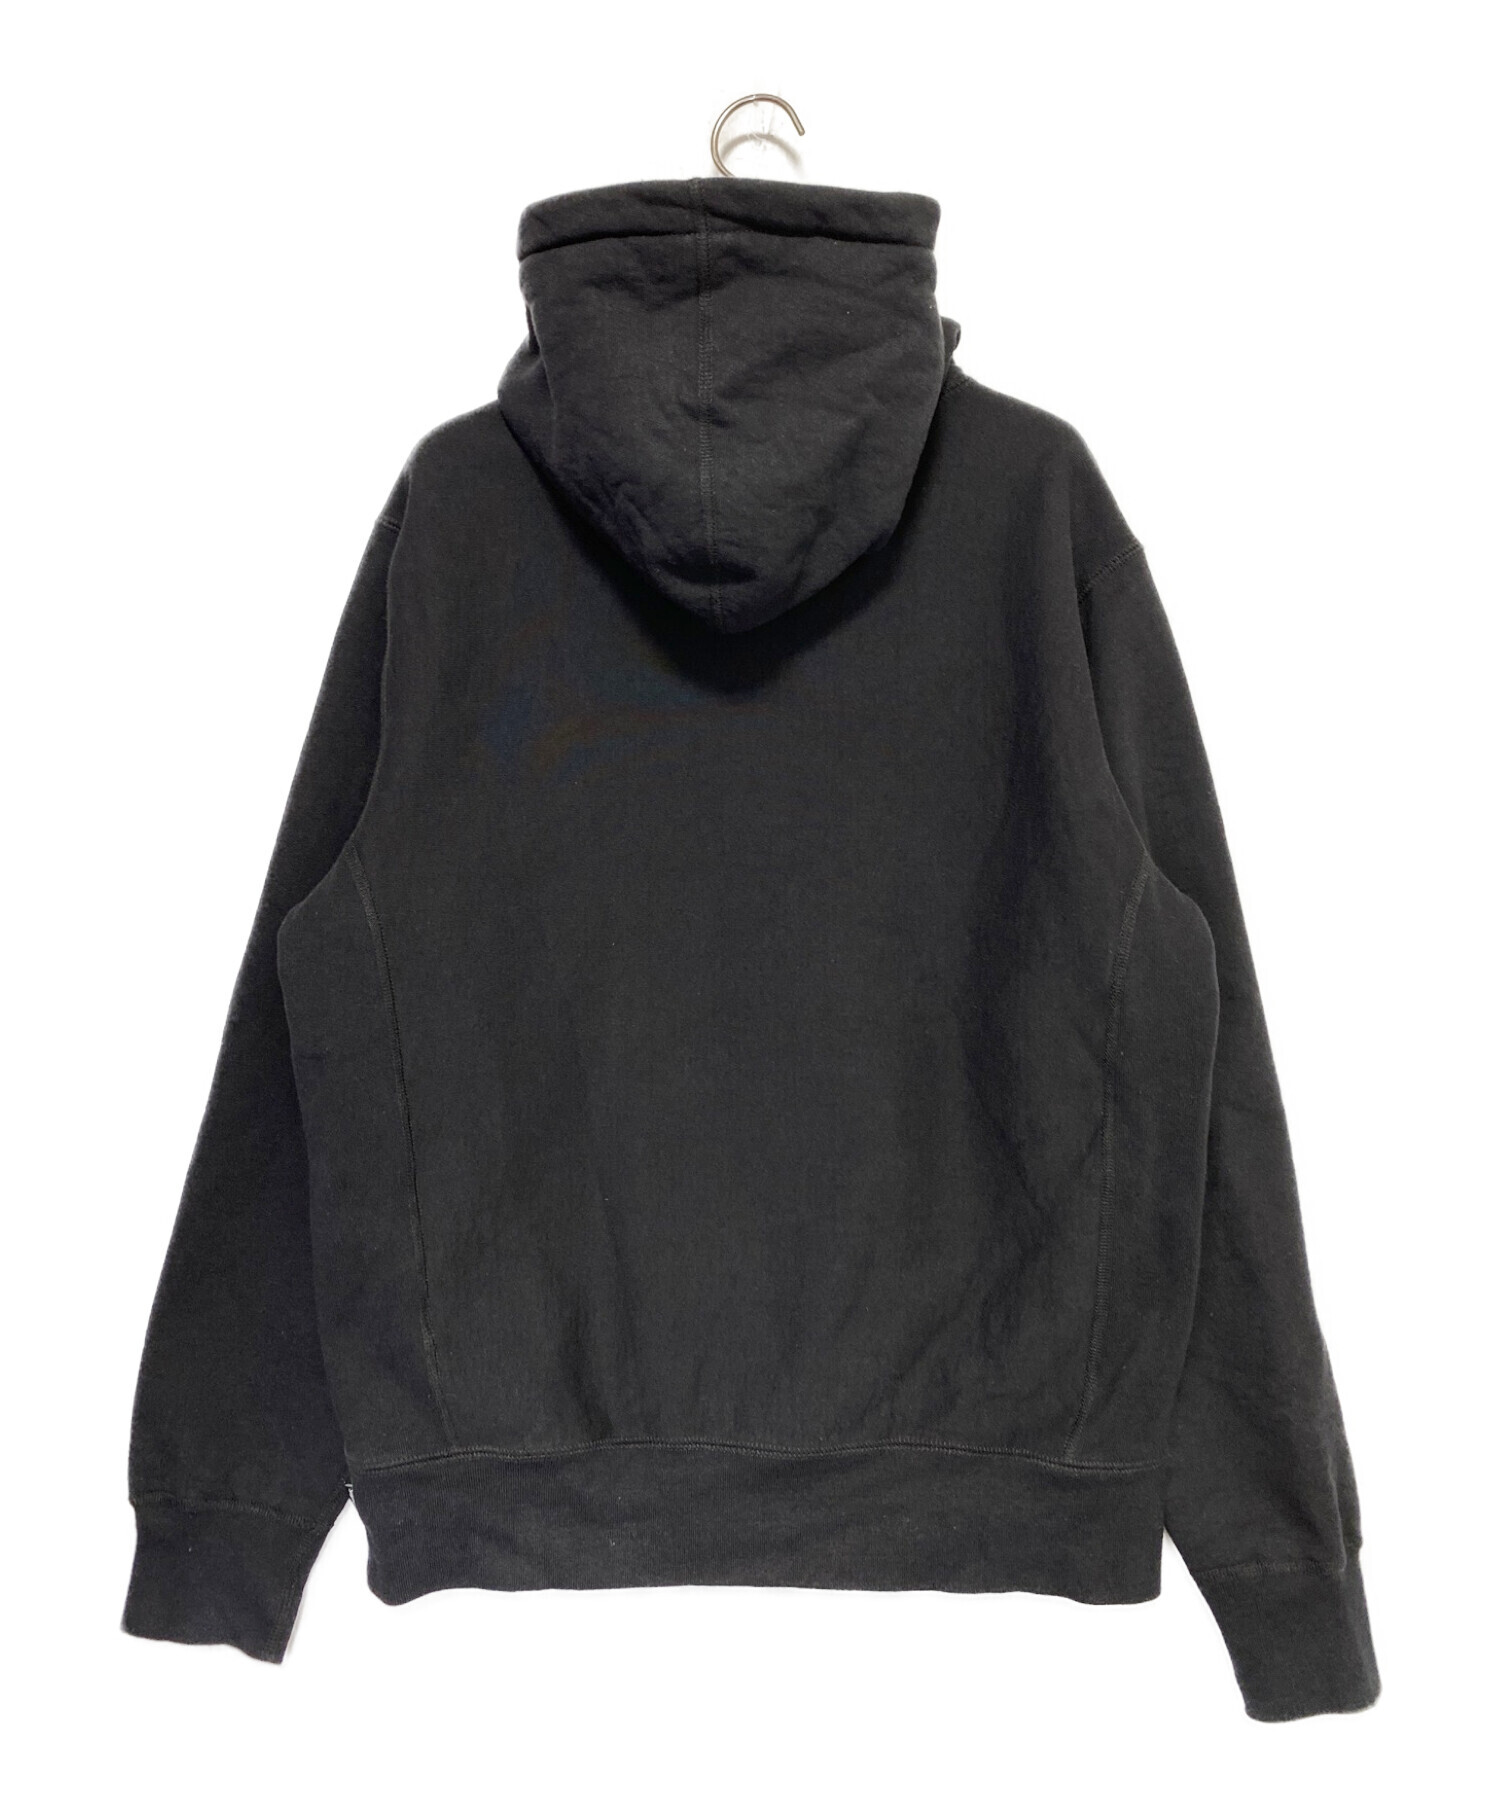 スウェットスエット黒 M supreme arc logo hooded sweatshirt